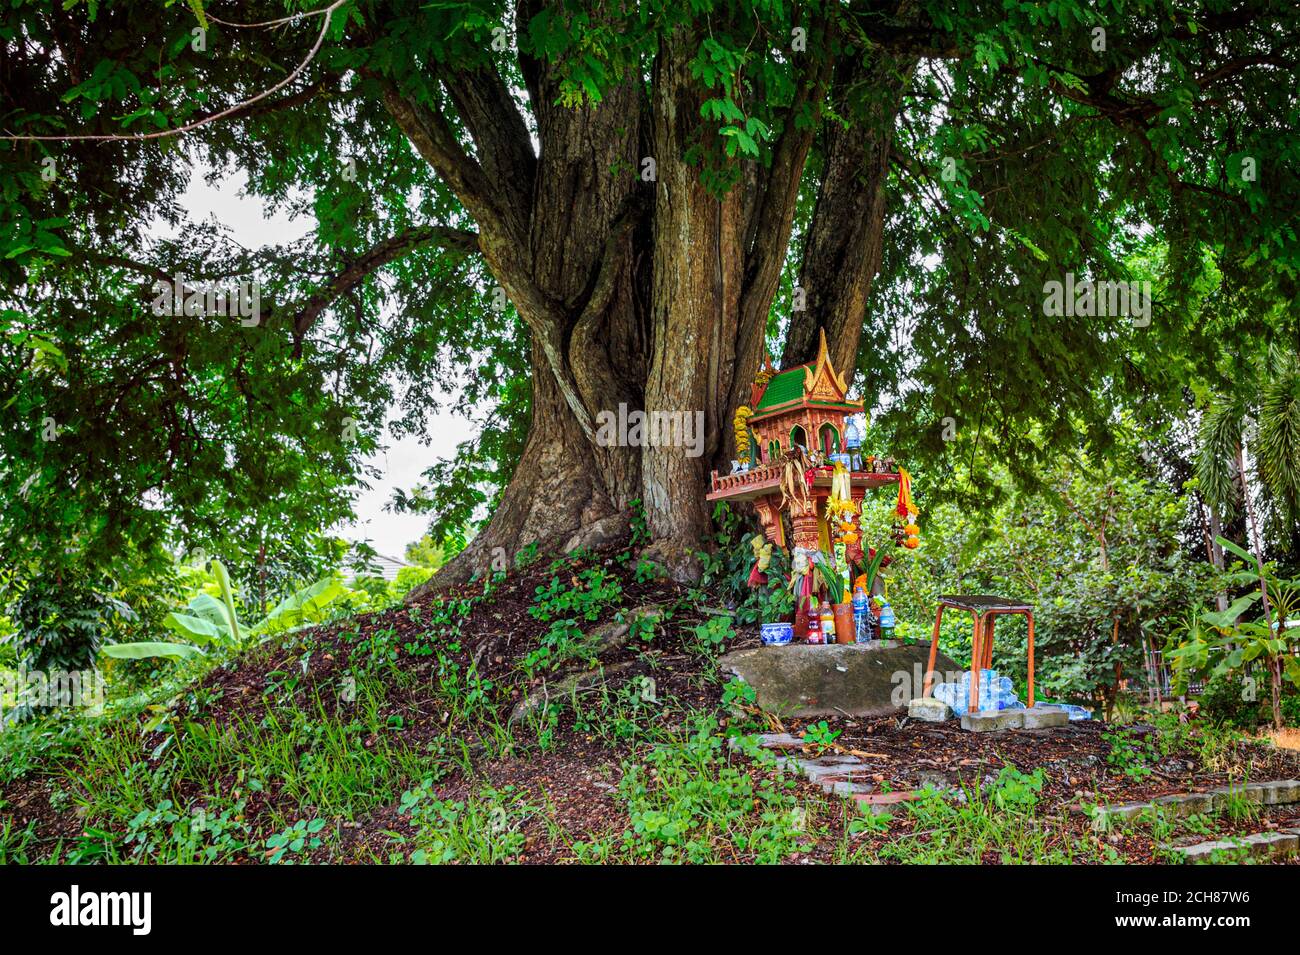 Dahinter steht ein Geisterhaus auf Erdhügel mit riesigem Baum. Traditionelles Thai Miniaturhaus für Schutzgeist gebaut, um zu residieren. Stockfoto